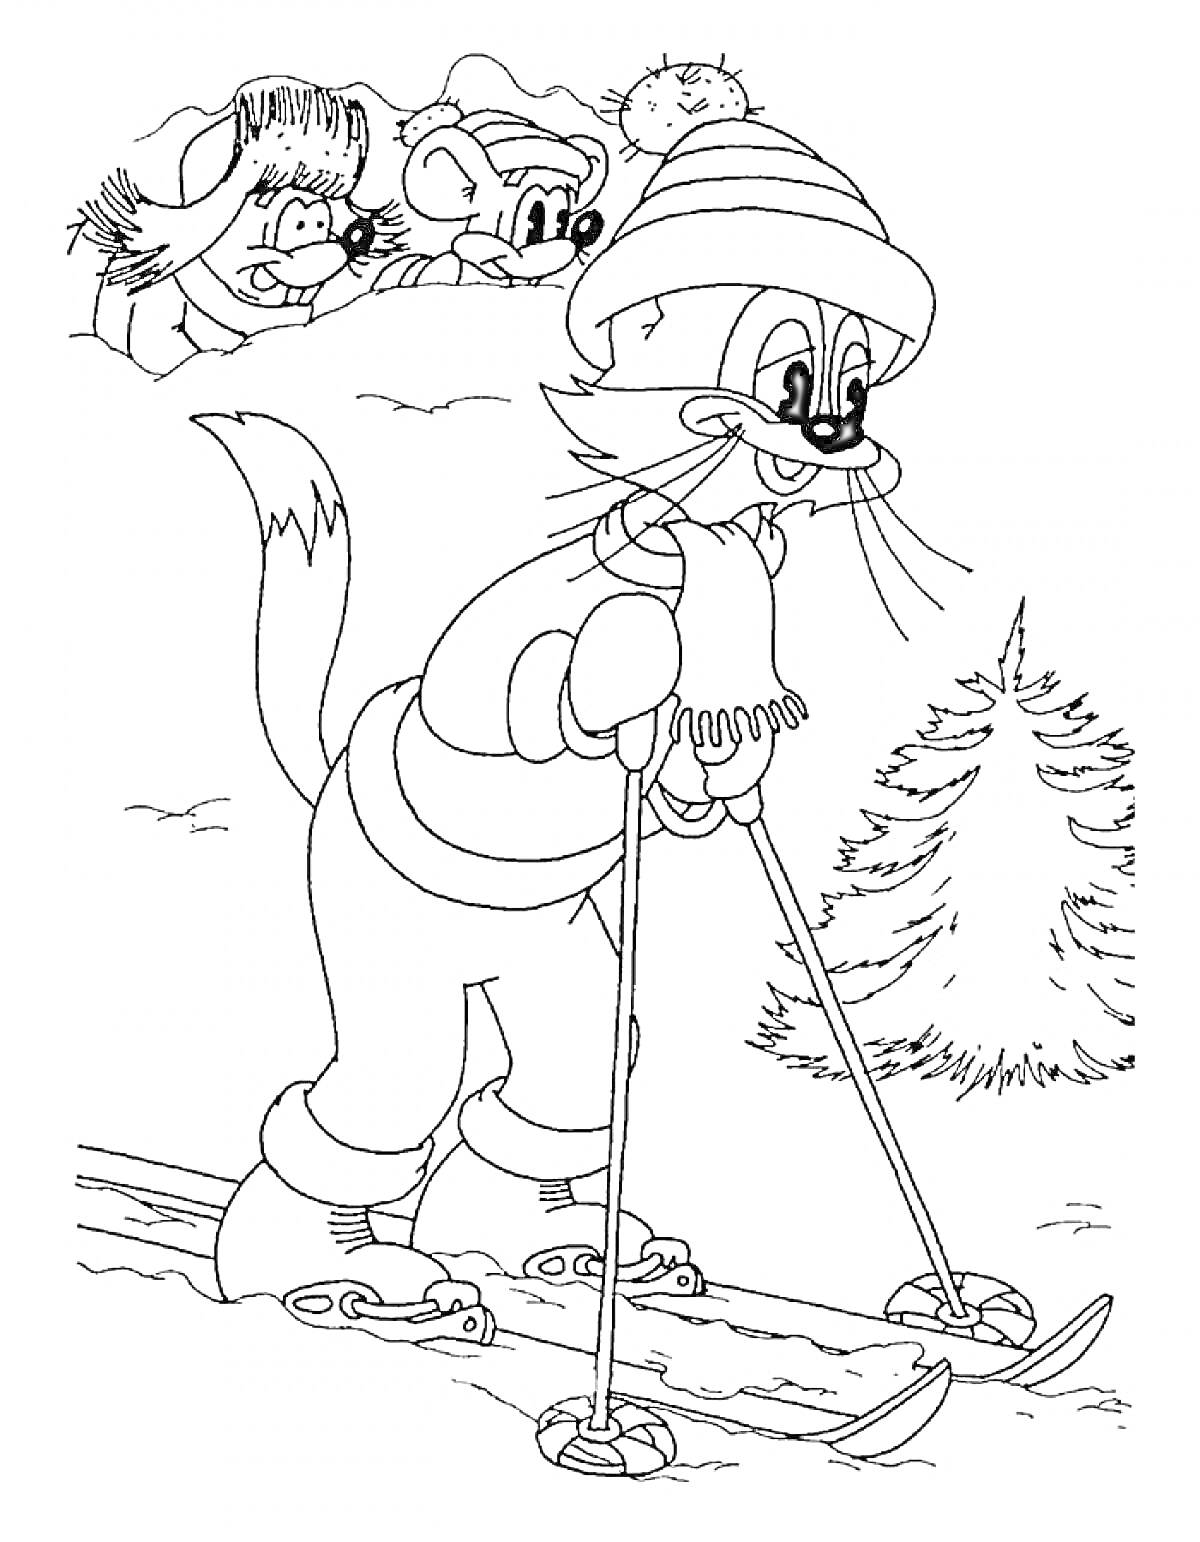 Кот на лыжах в зимней шапке и шарфе, фон с деревом и тремя персонажами, наблюдающими сверху.